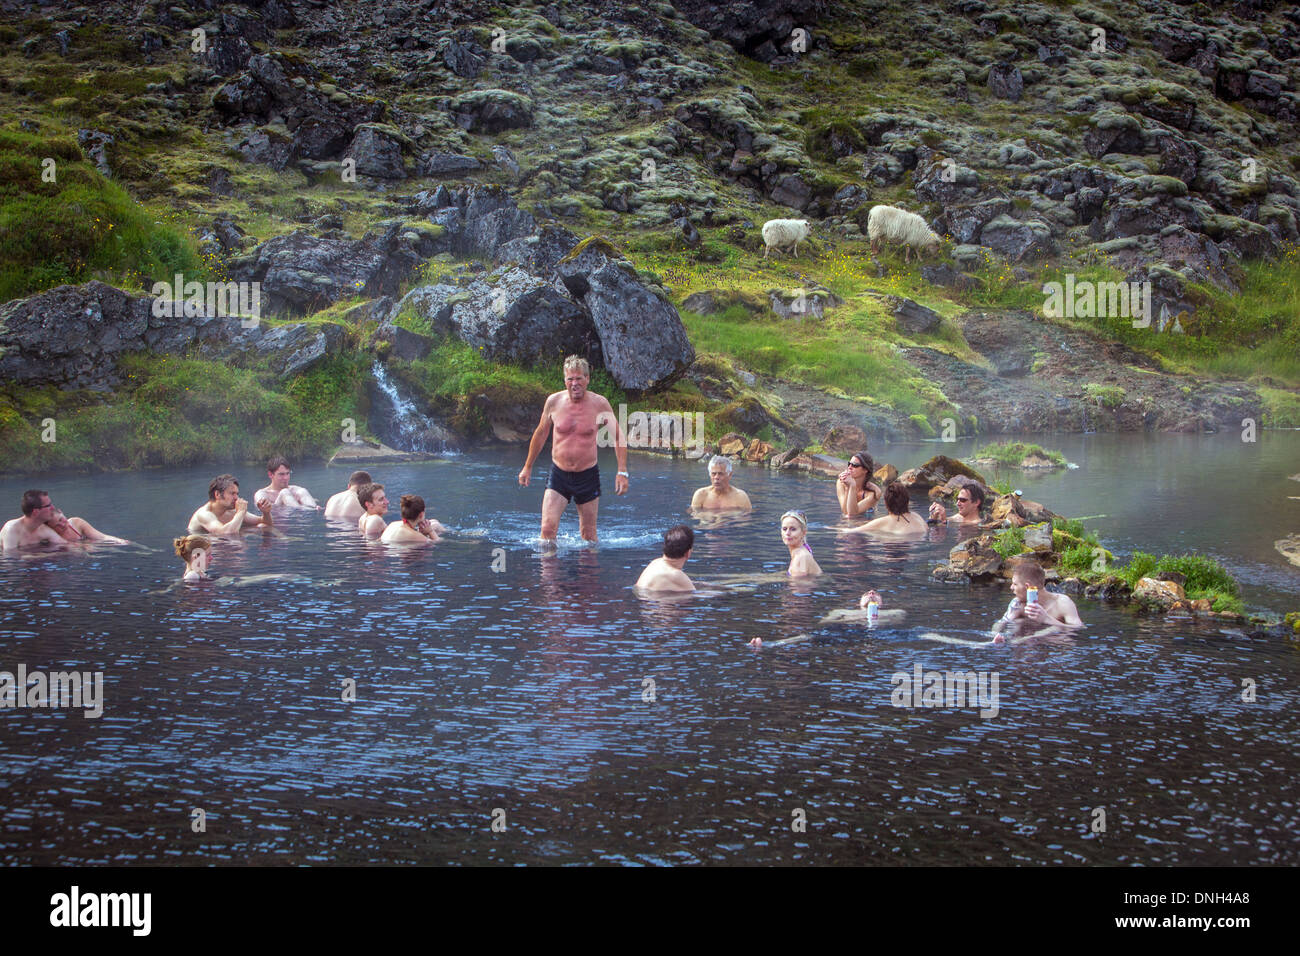 La balneazione in una sorgente calda naturale, vulcaniche e zona geotermica di LANDMANNALAUGAR, il nome significa letteralmente "bagni caldi del popolo della terra', Regione degli Altipiani, sud dell'Islanda, EUROPA Foto Stock